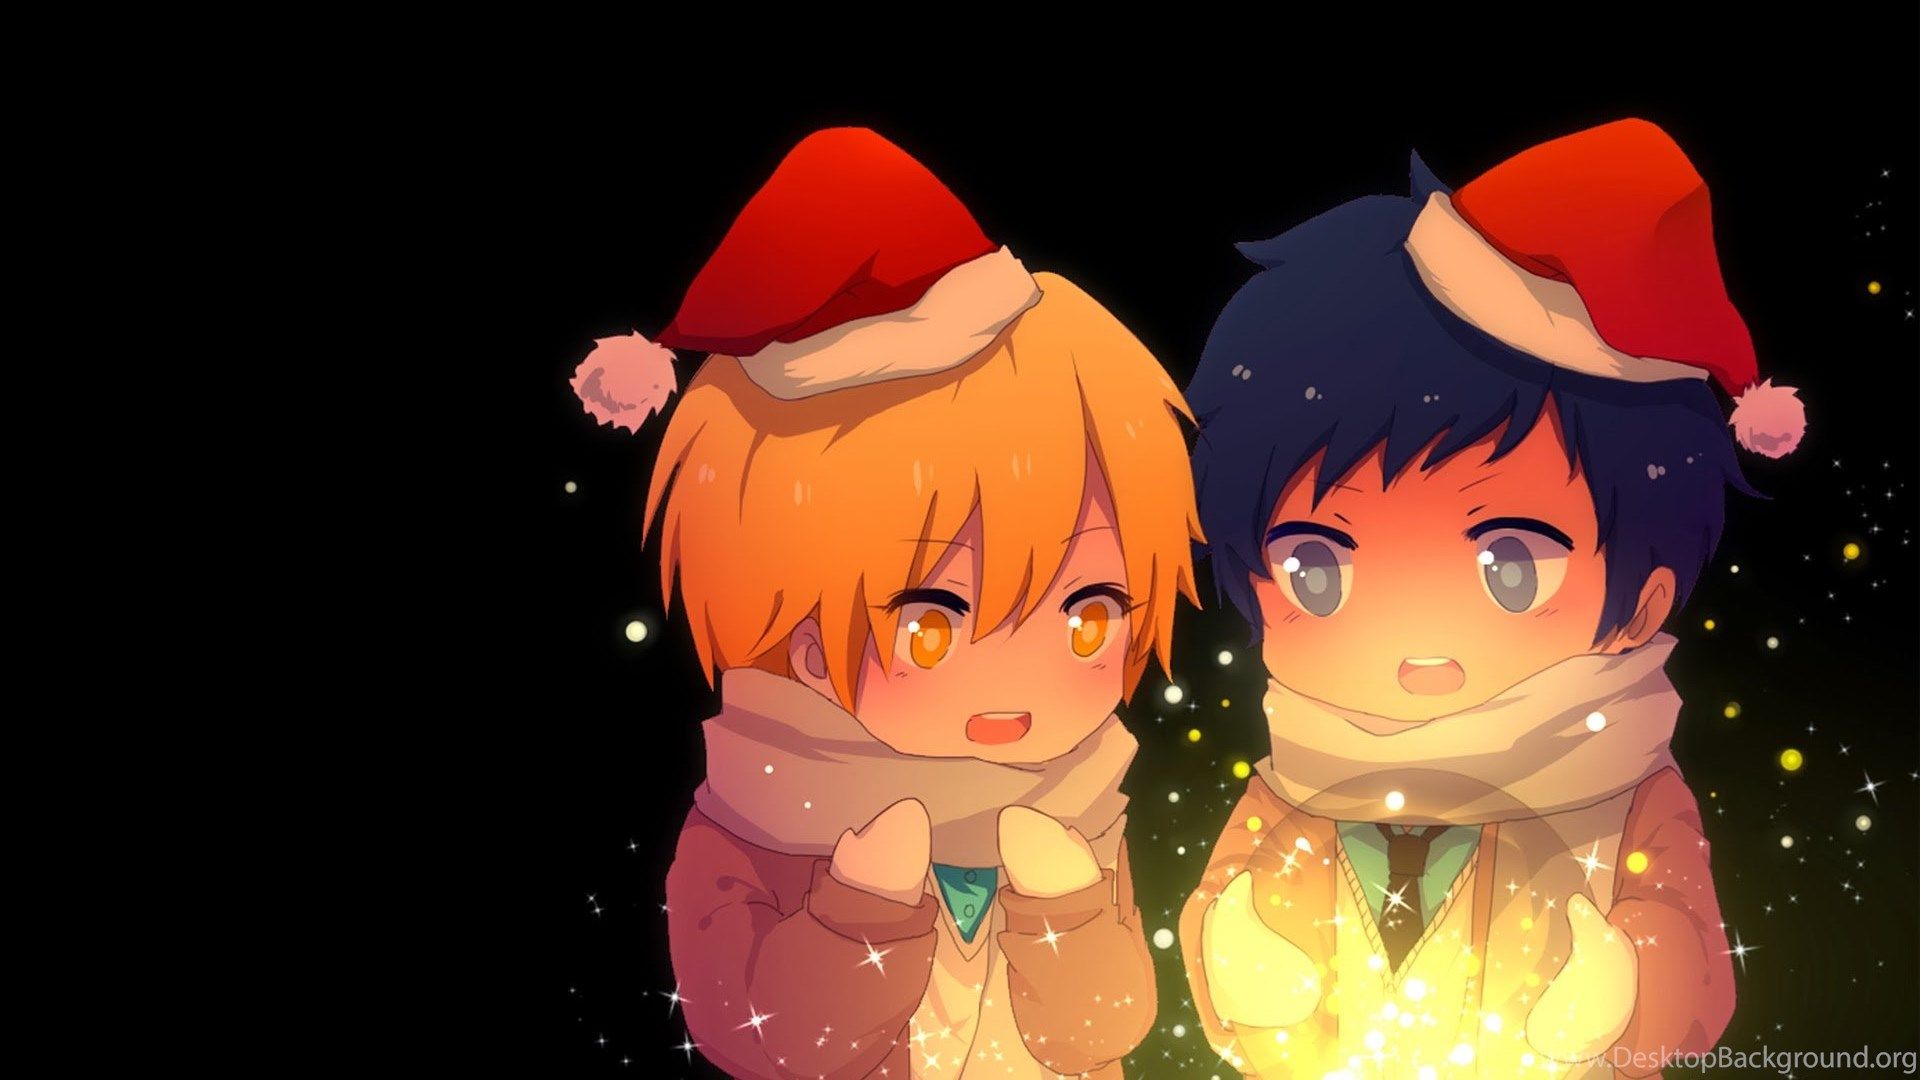 Anime Boys Wallpaper For Christmas (1) Free Desktop Background